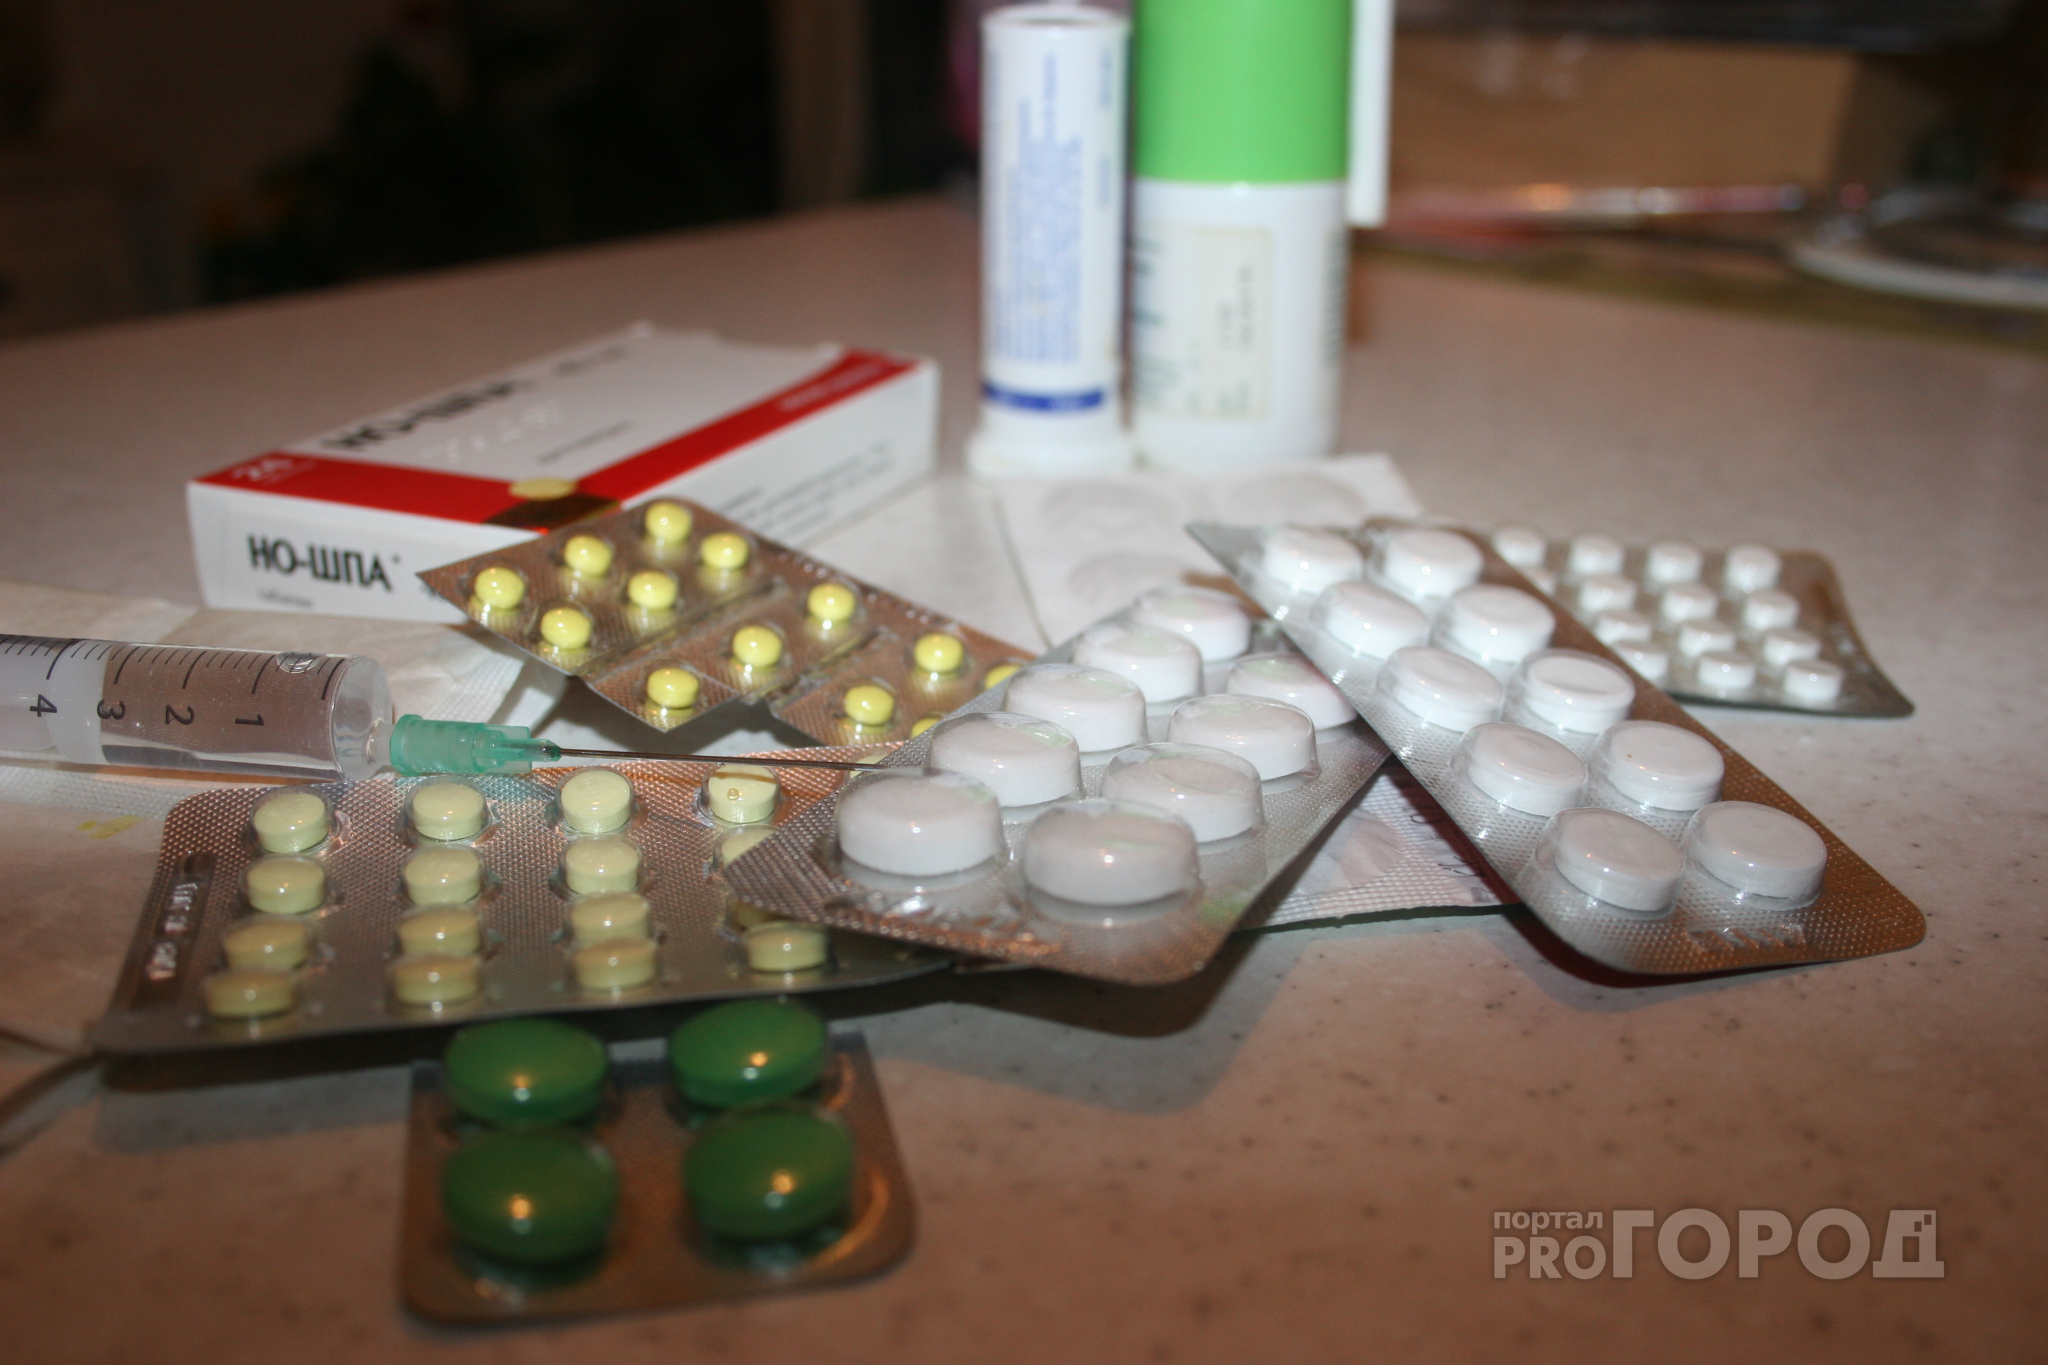 Жители Марий Эл получат бесплатные лекарства от государства